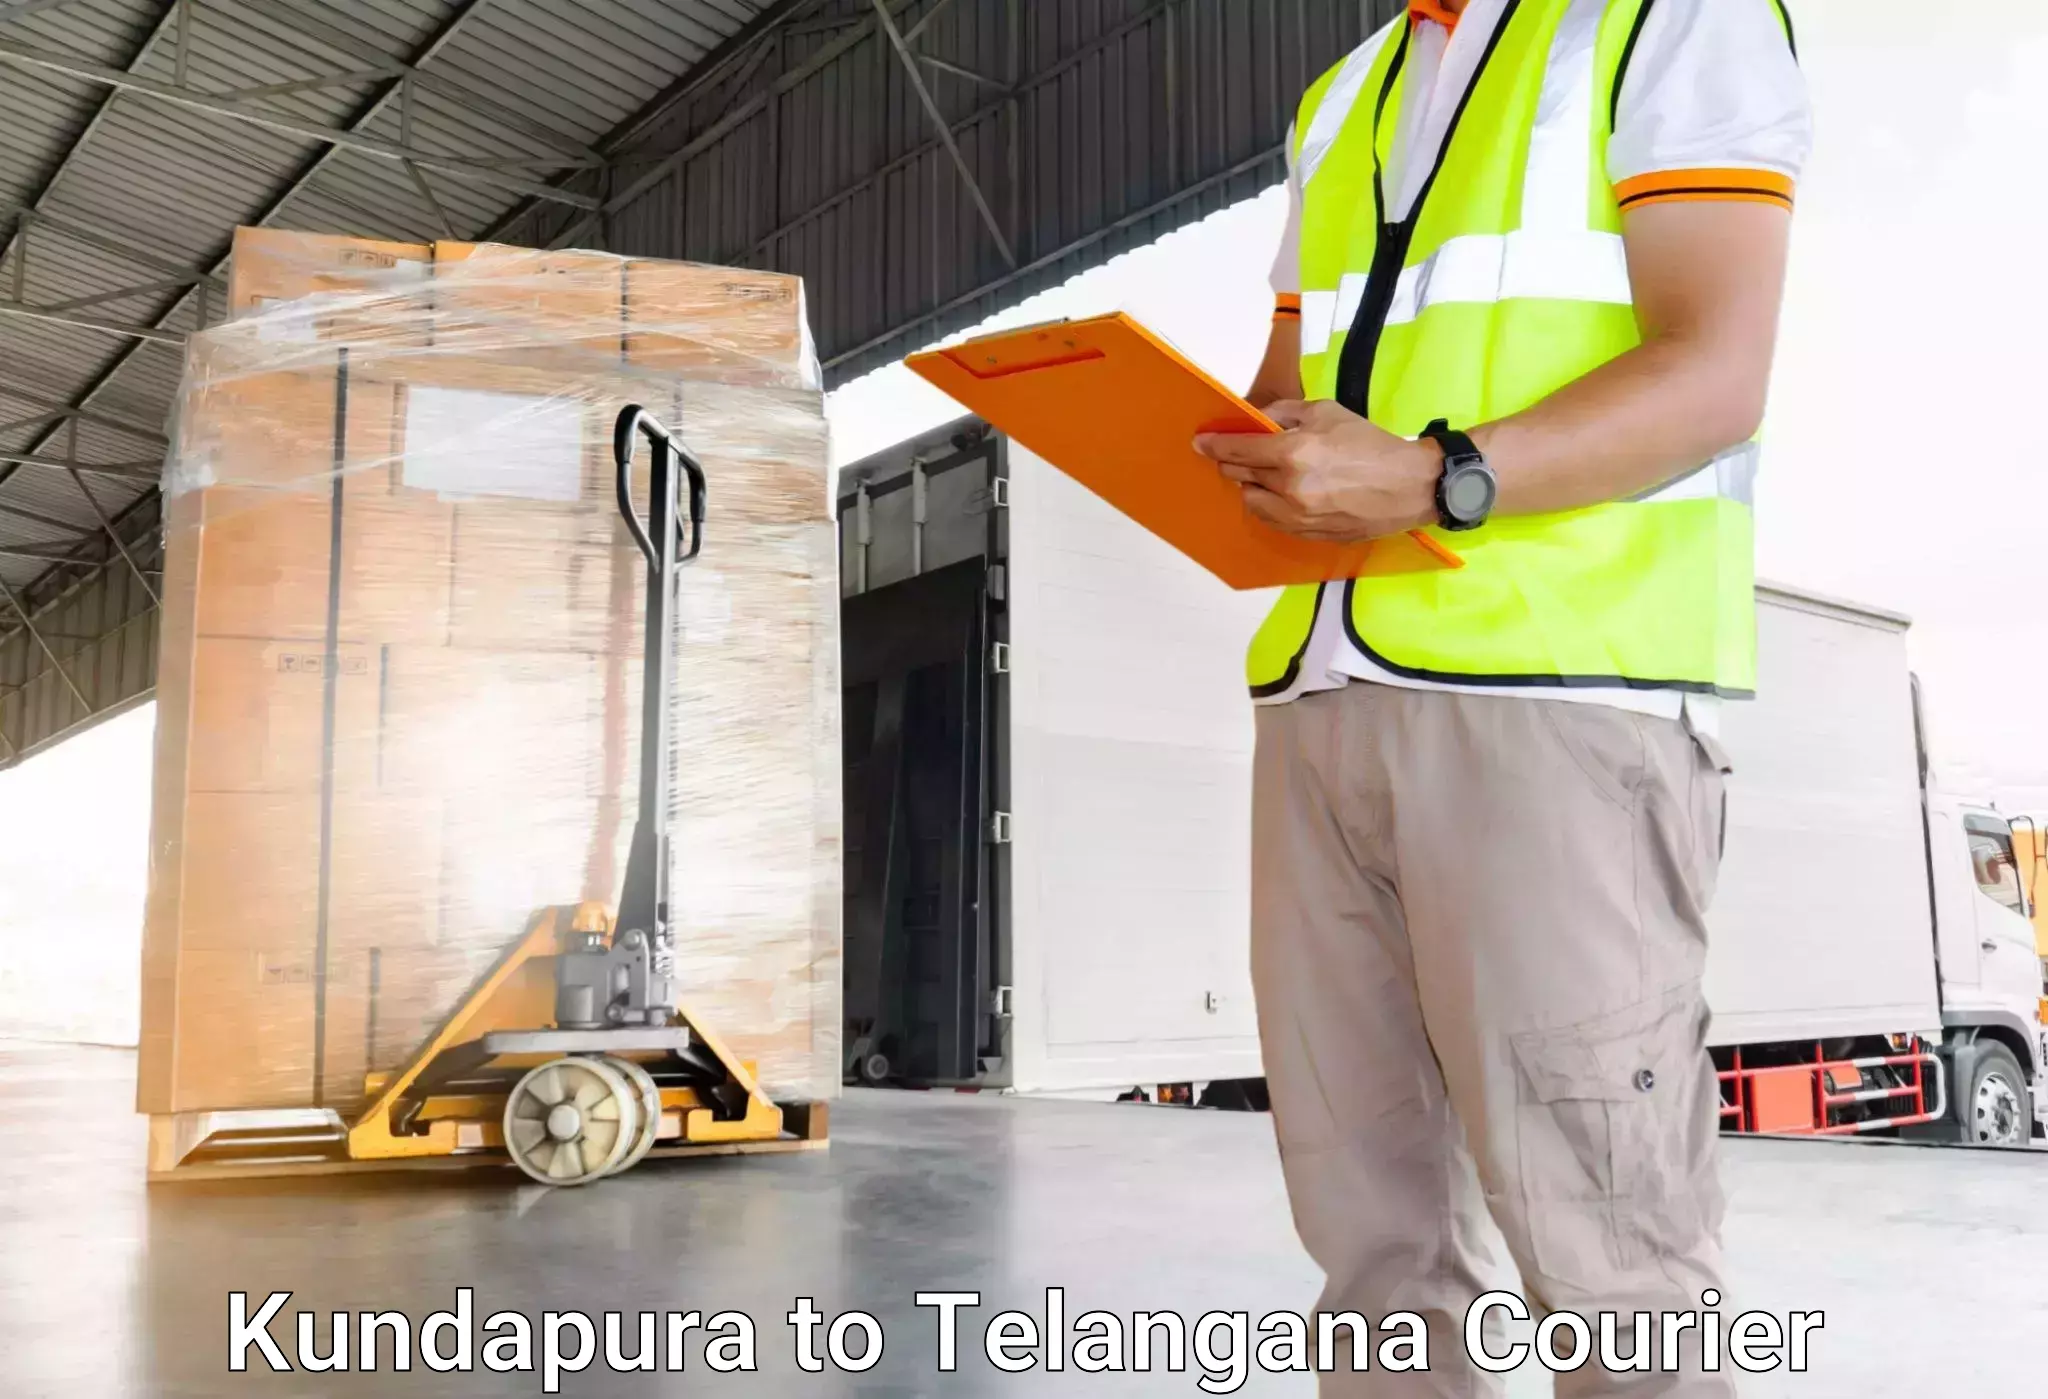 Luggage transport consultancy Kundapura to Jainoor